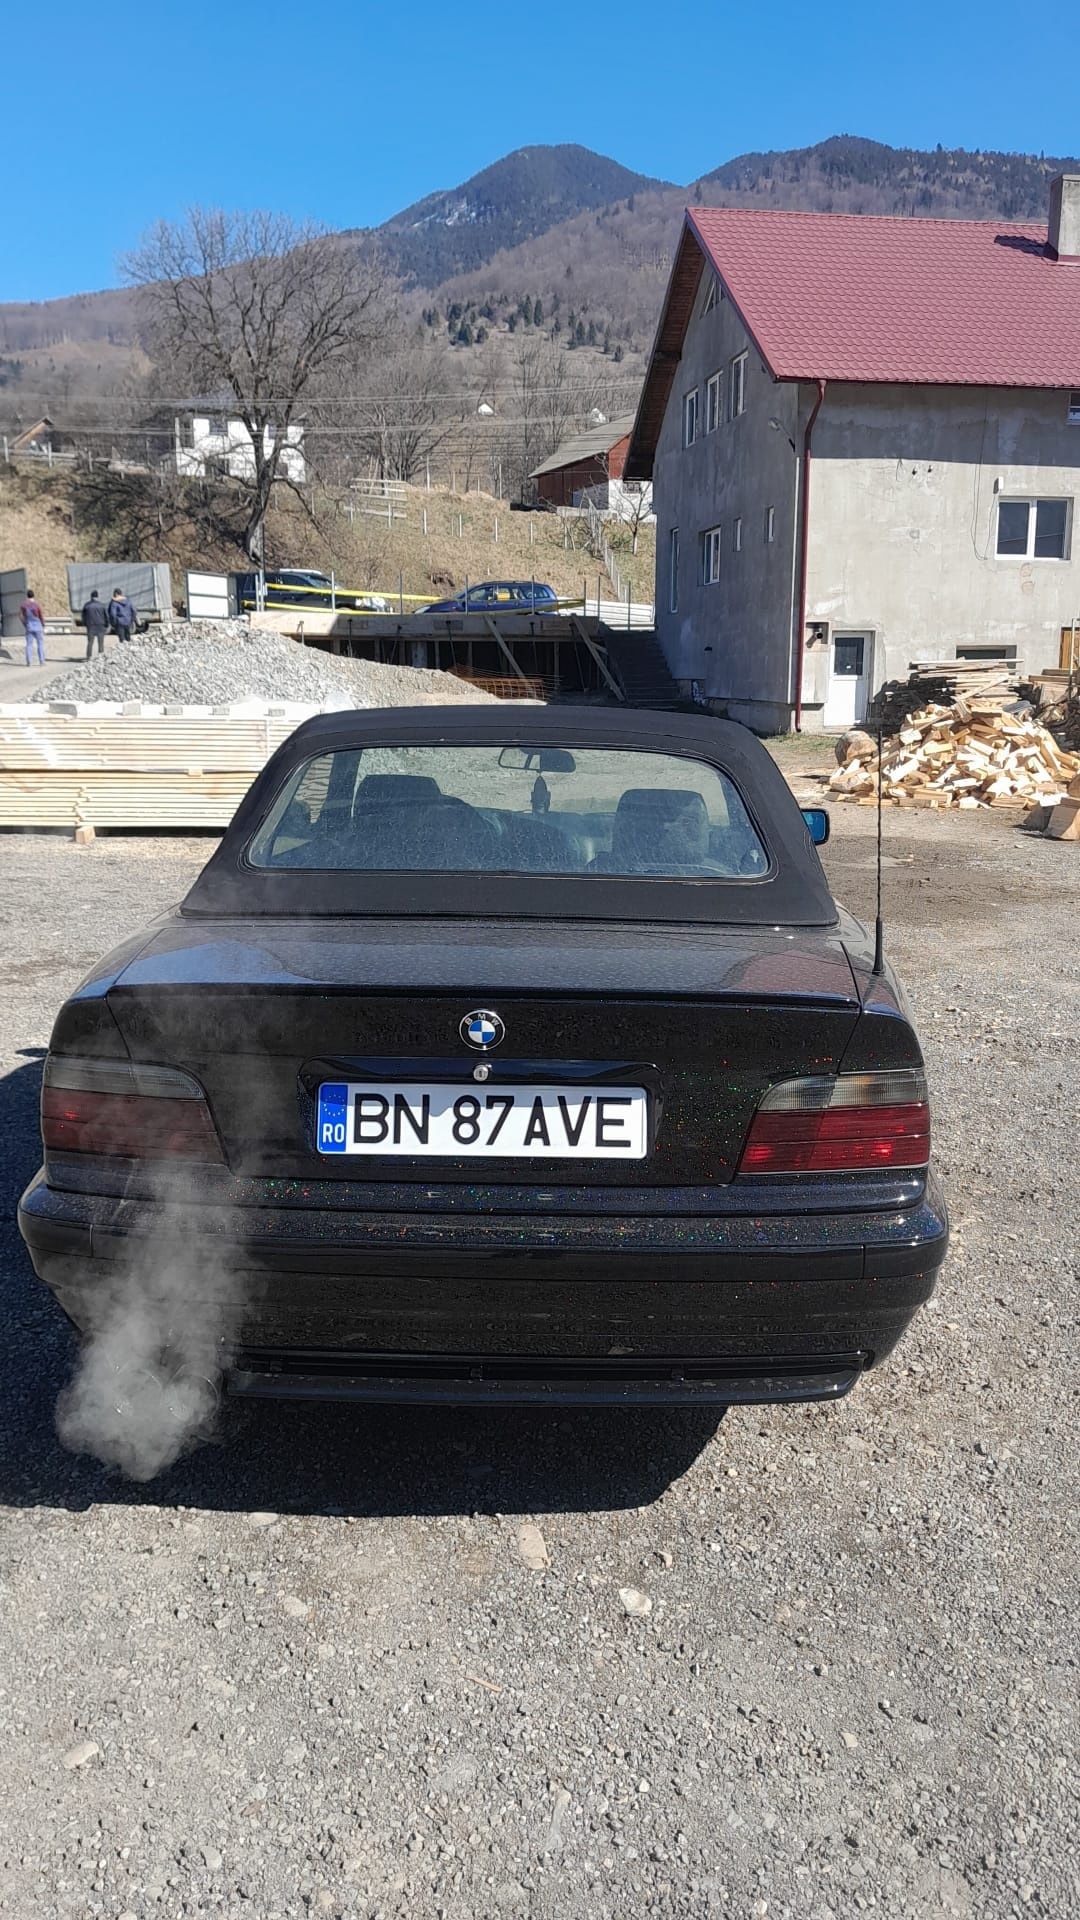 BMW E36 cabrio, fabricație 1994, 1990 benzina, culoare negru.